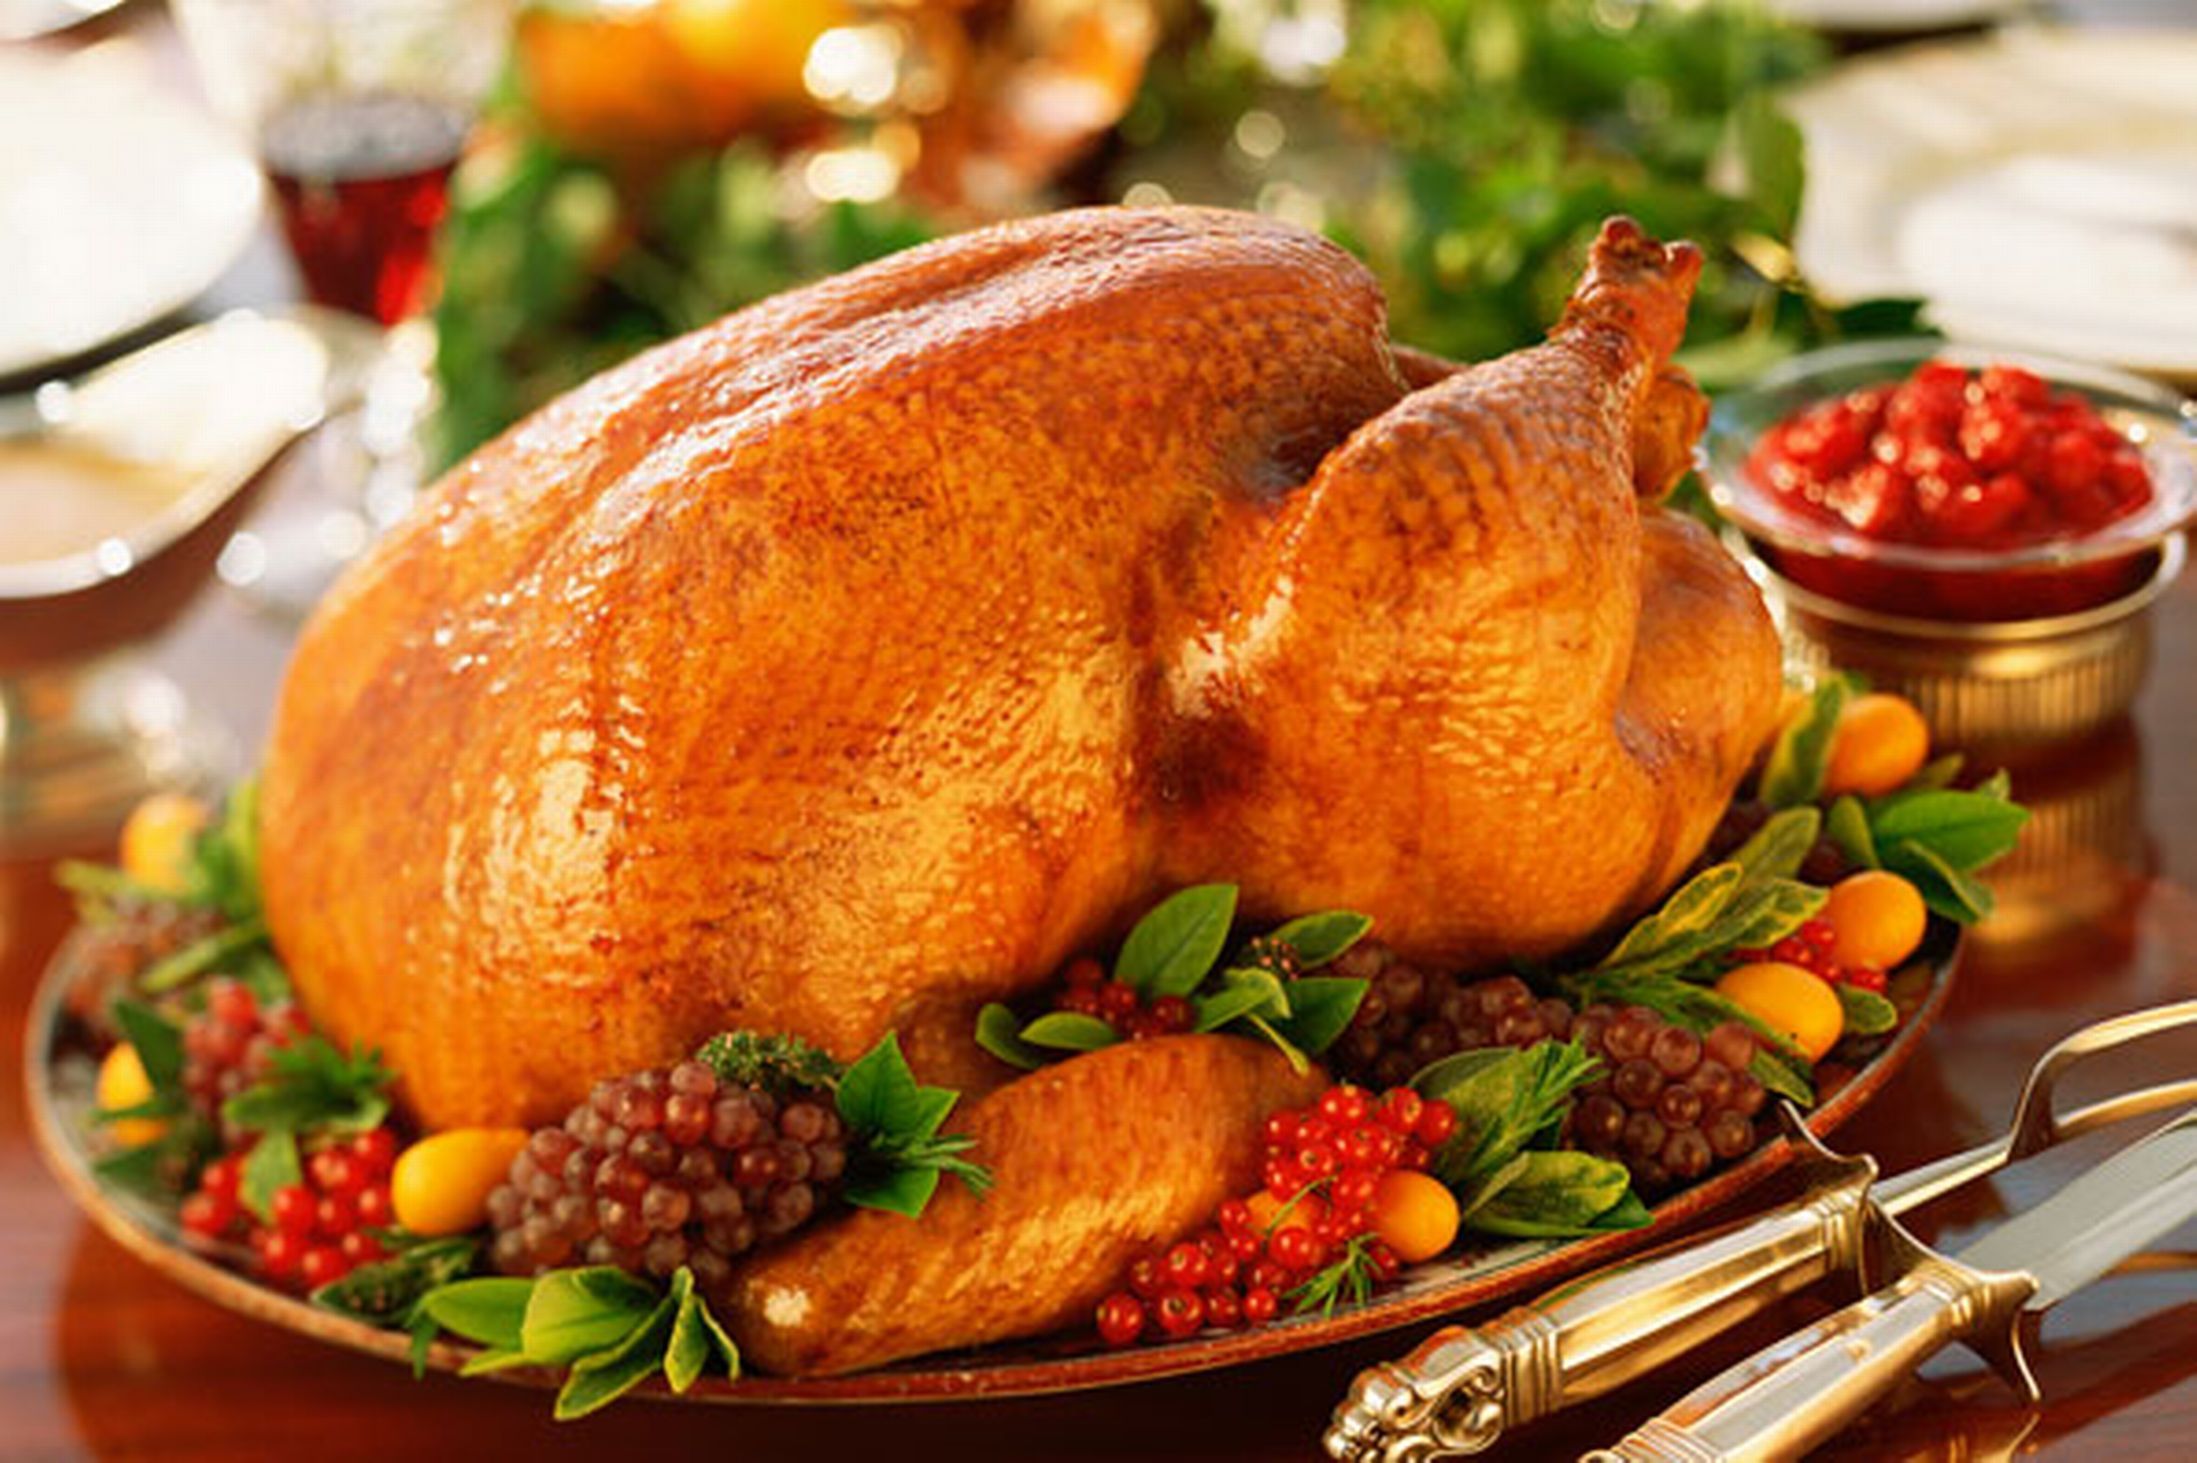 Now индейка. . Рождественская индейка (Christmas Turkey) Ингредиенты. Праздничные блюда. Рождественская индейка запеченная. Жареная индейка на Рождество в Англии.